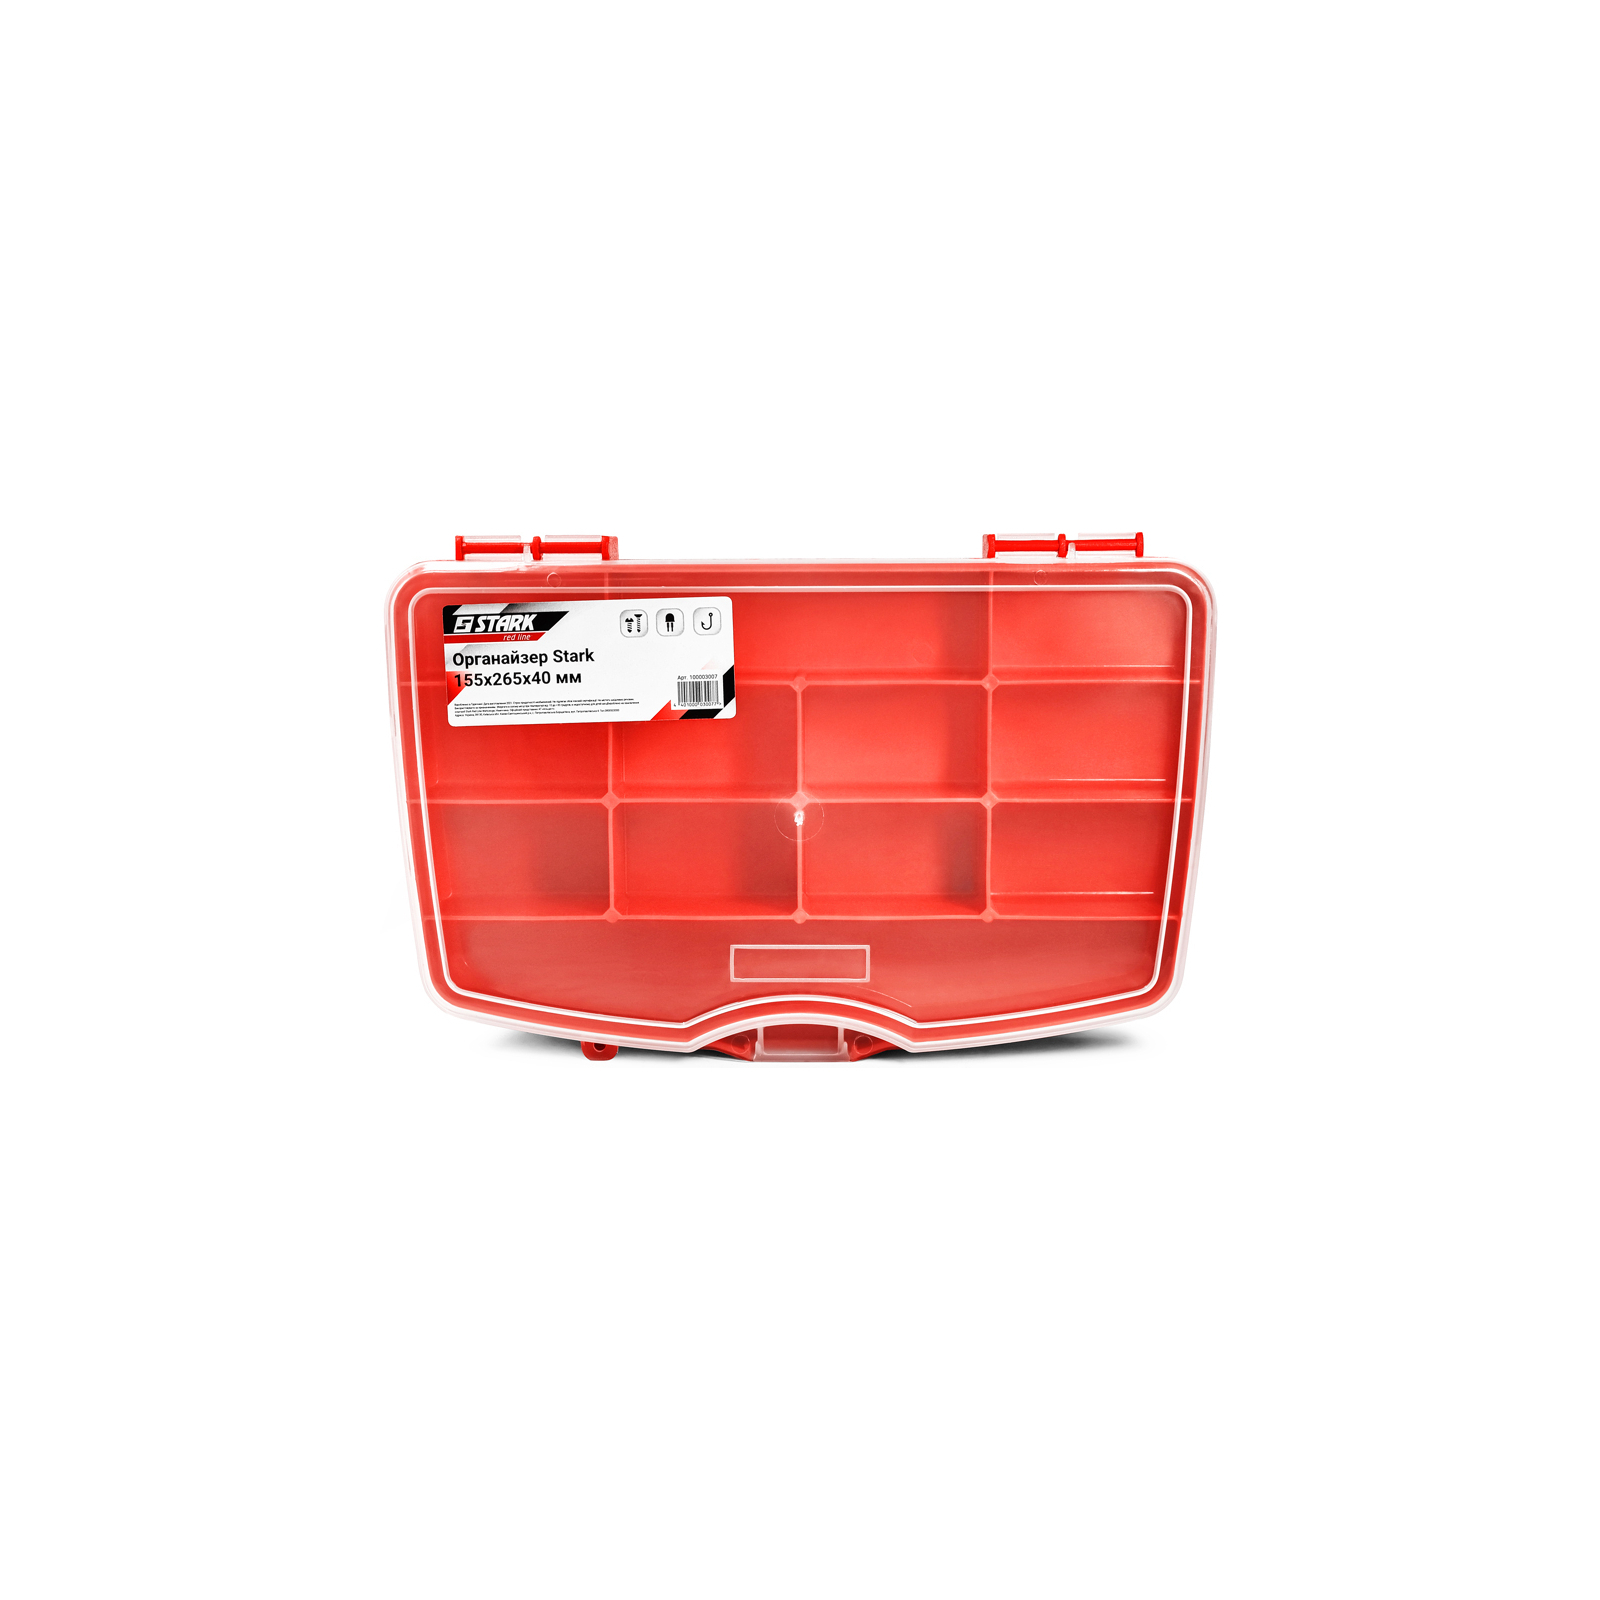 Ящик для інструментів Stark органайзер SmartBox 155x265x40 мм (100003007)